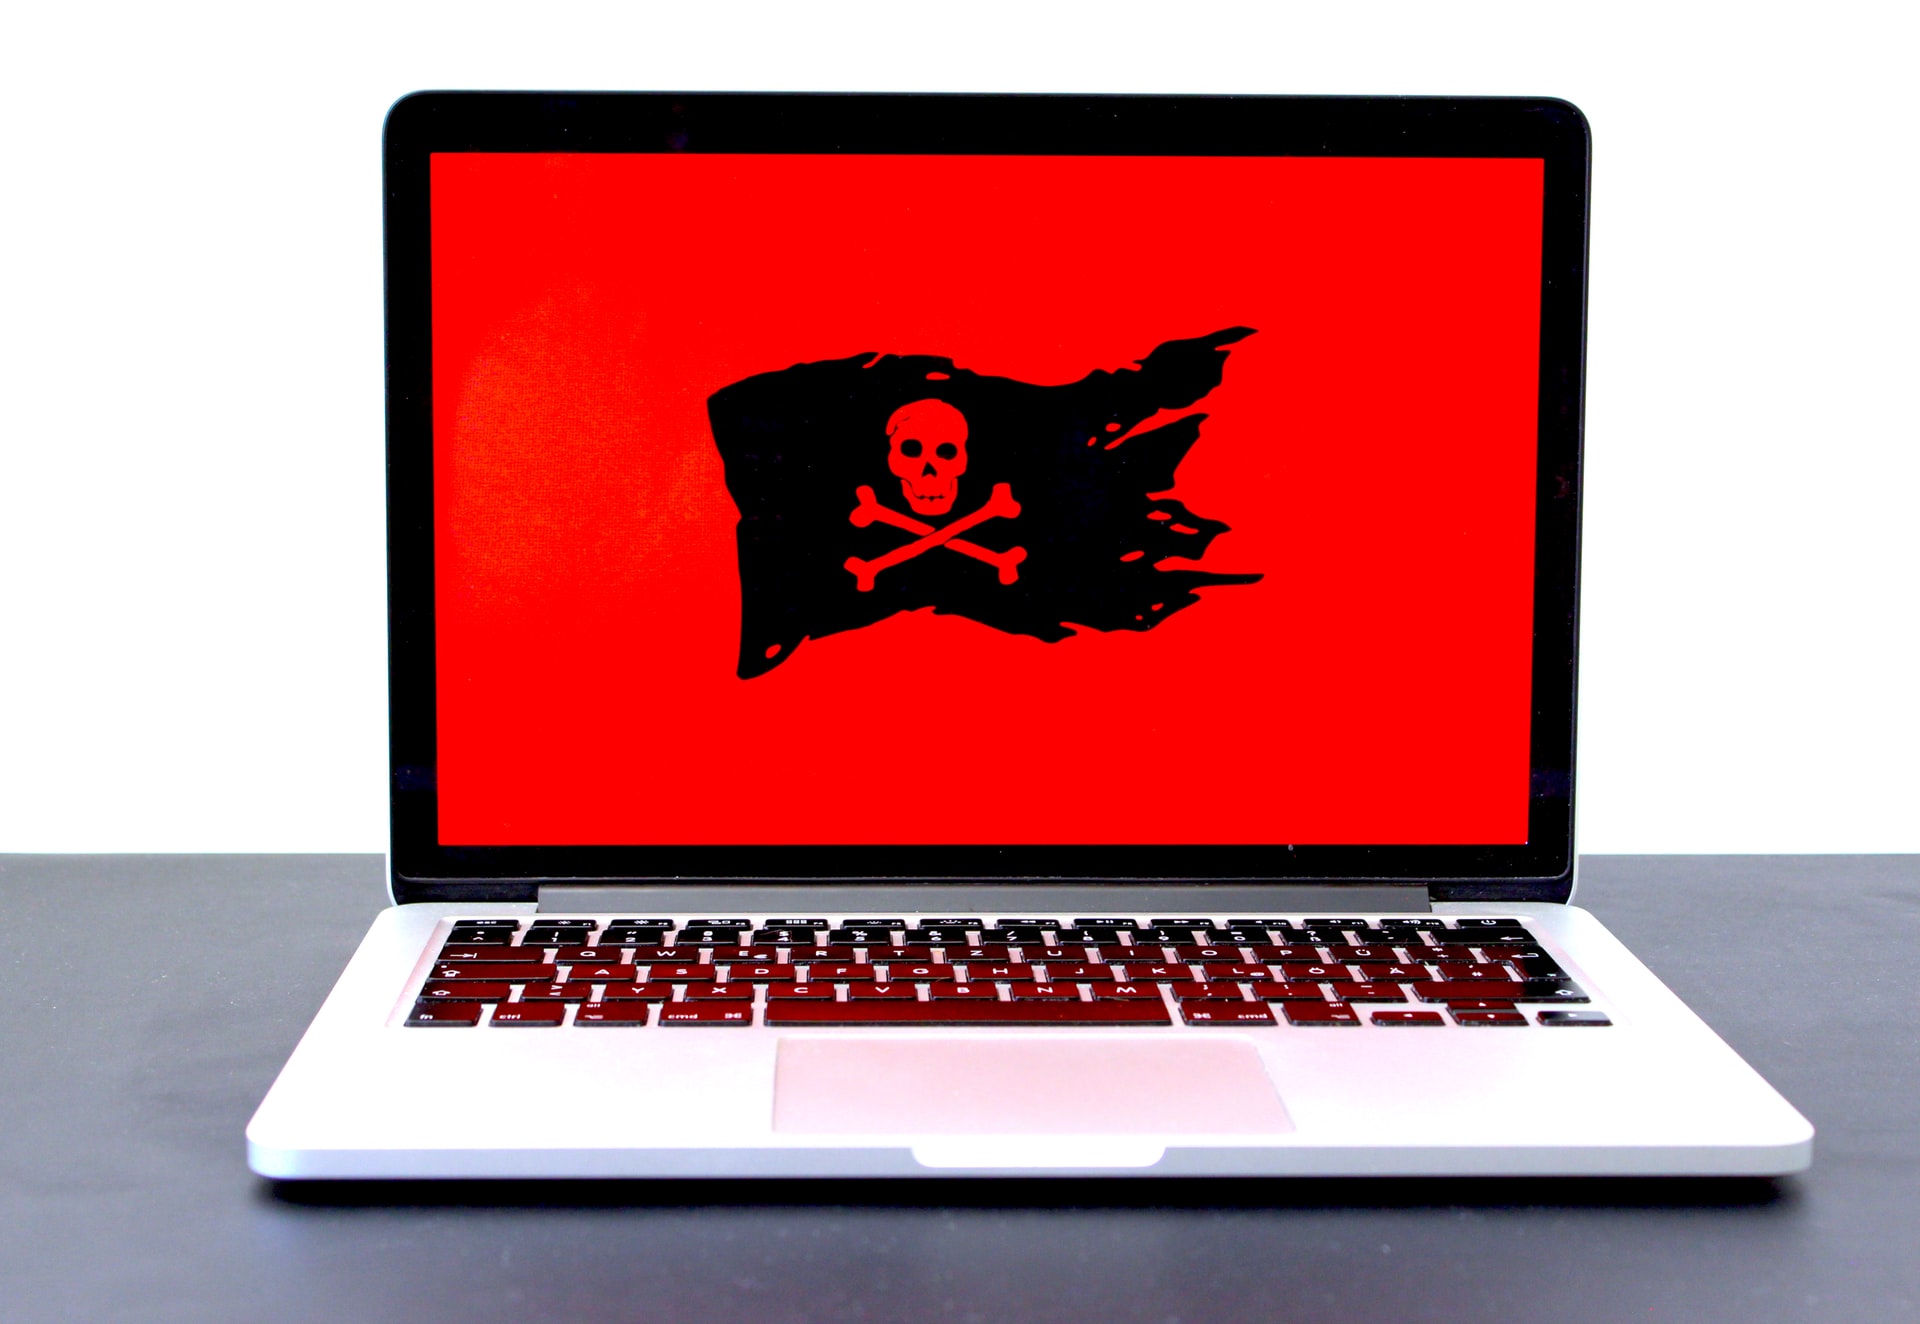 Ilustração de malware: uma bandeira virtual preta com uma caveira desenhada aparece em um fundo vermelho na tela de um notebook